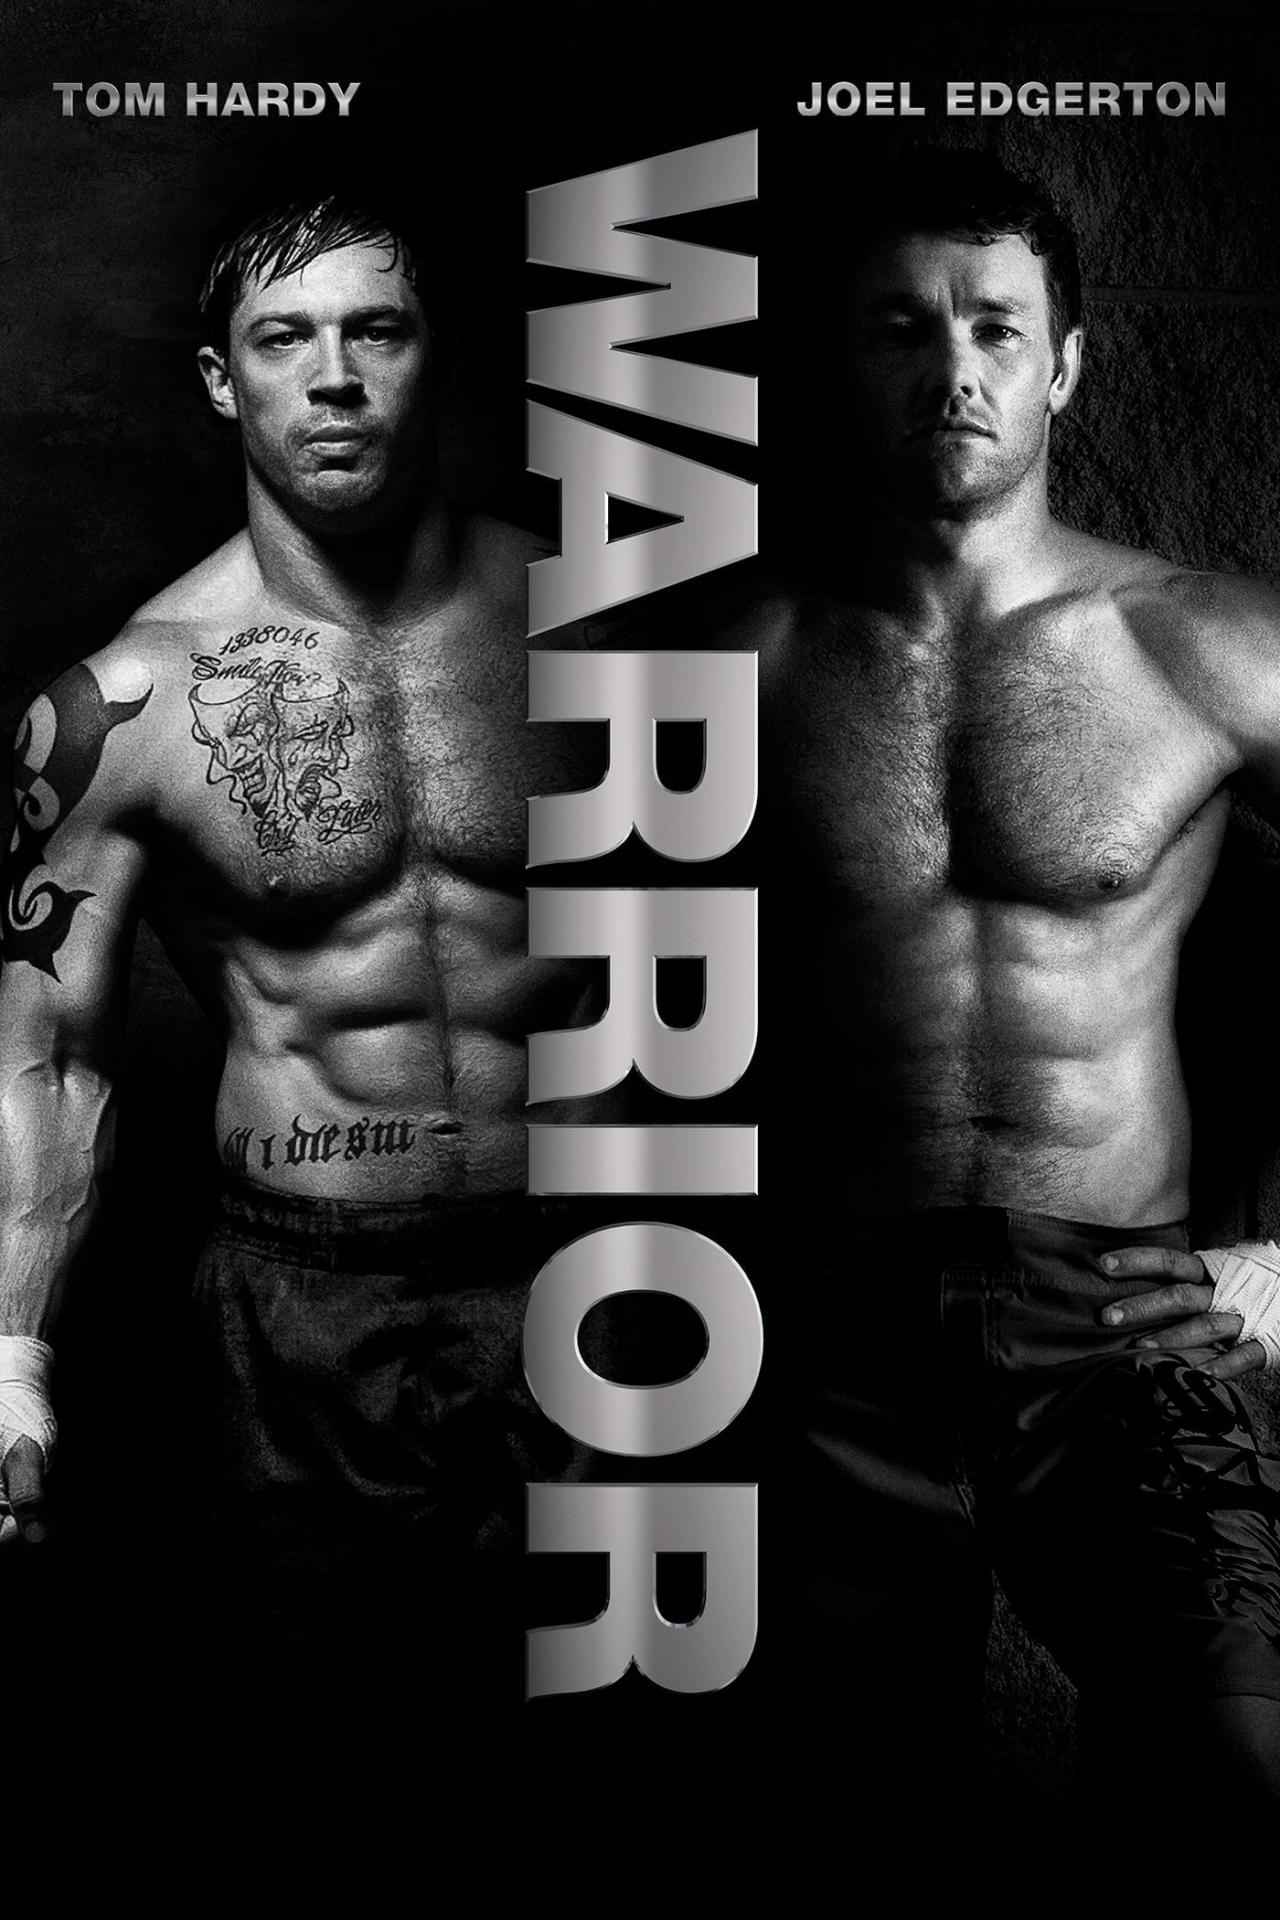 Affiche du film Warrior